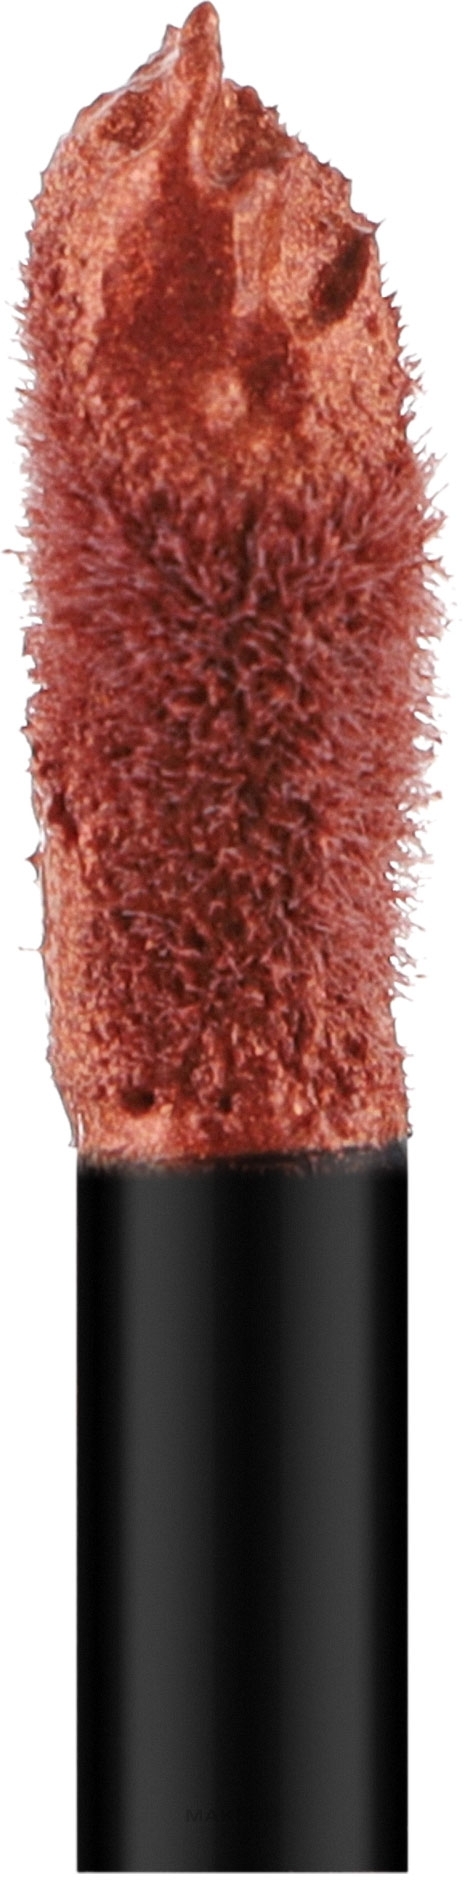 Жидкая помада для губ - Deborah Fluid Metallic Mat Lipstick — фото 1 - Metallic Copper